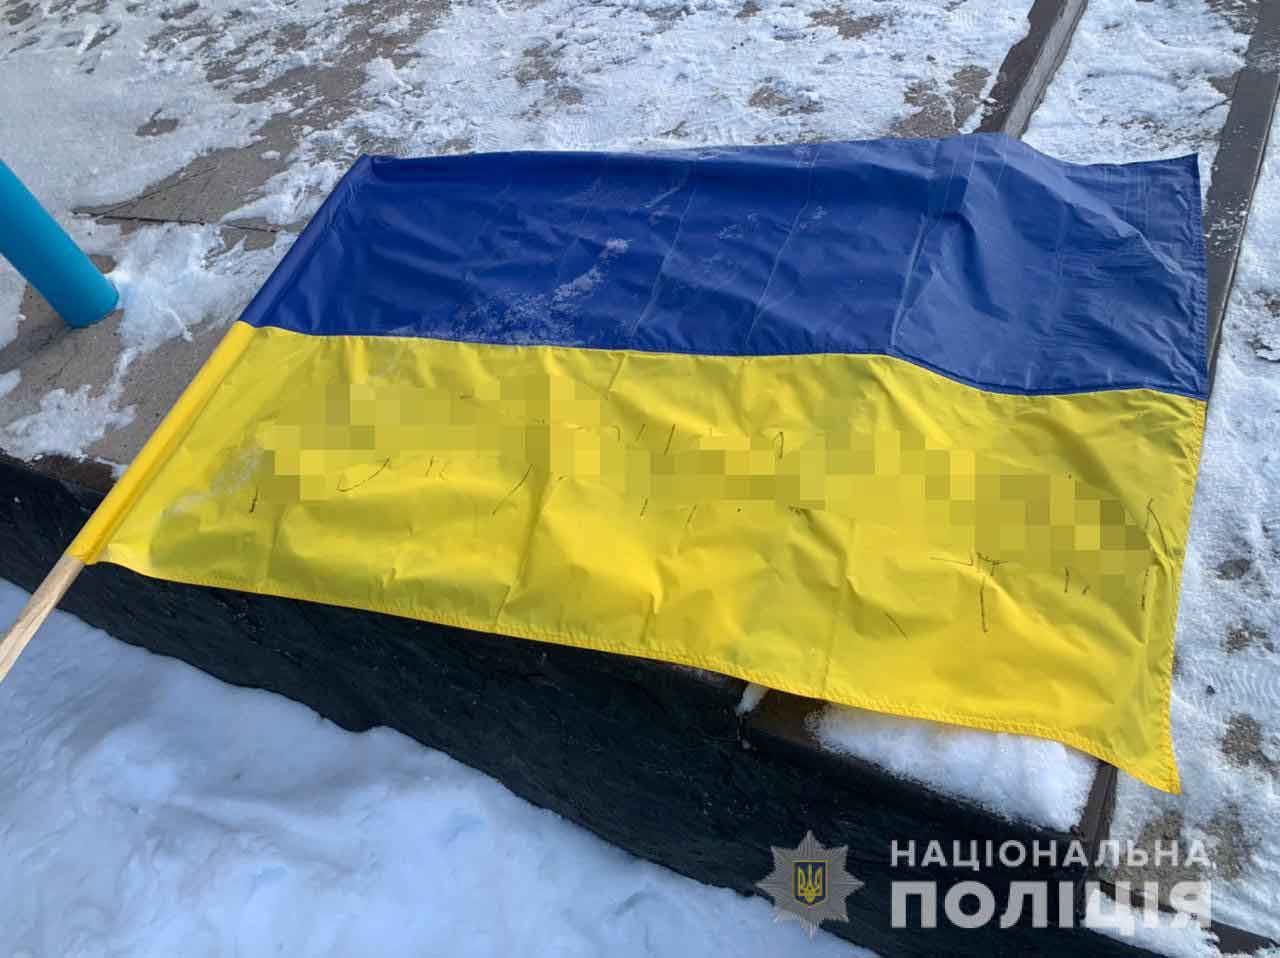 «Курва» – на прапорі України написала 18-річна Віка з Оленівки, бо образилася на працівницю сільради, що «вчила жити»